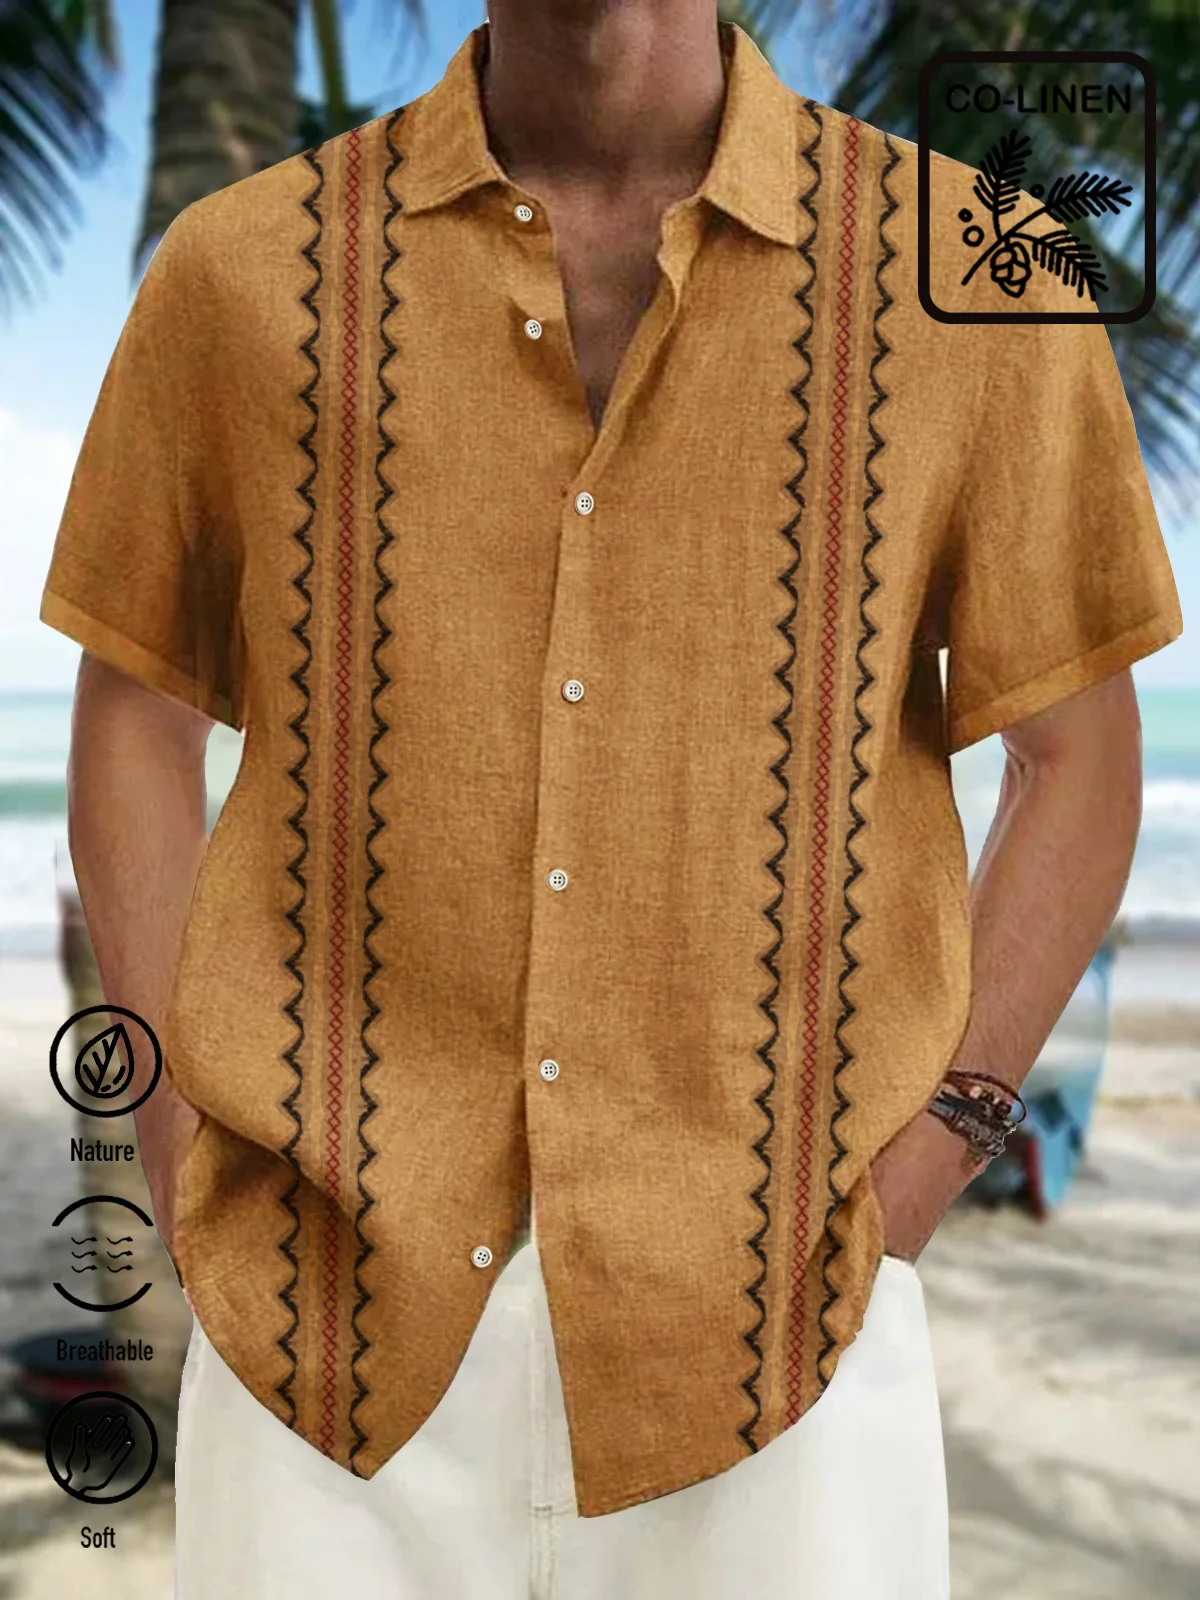 Royaura Holiday Casual Vintage Men's Guayabera Shirts Natural Fiber Blend Oversized Hawaiian Aztec Shirts